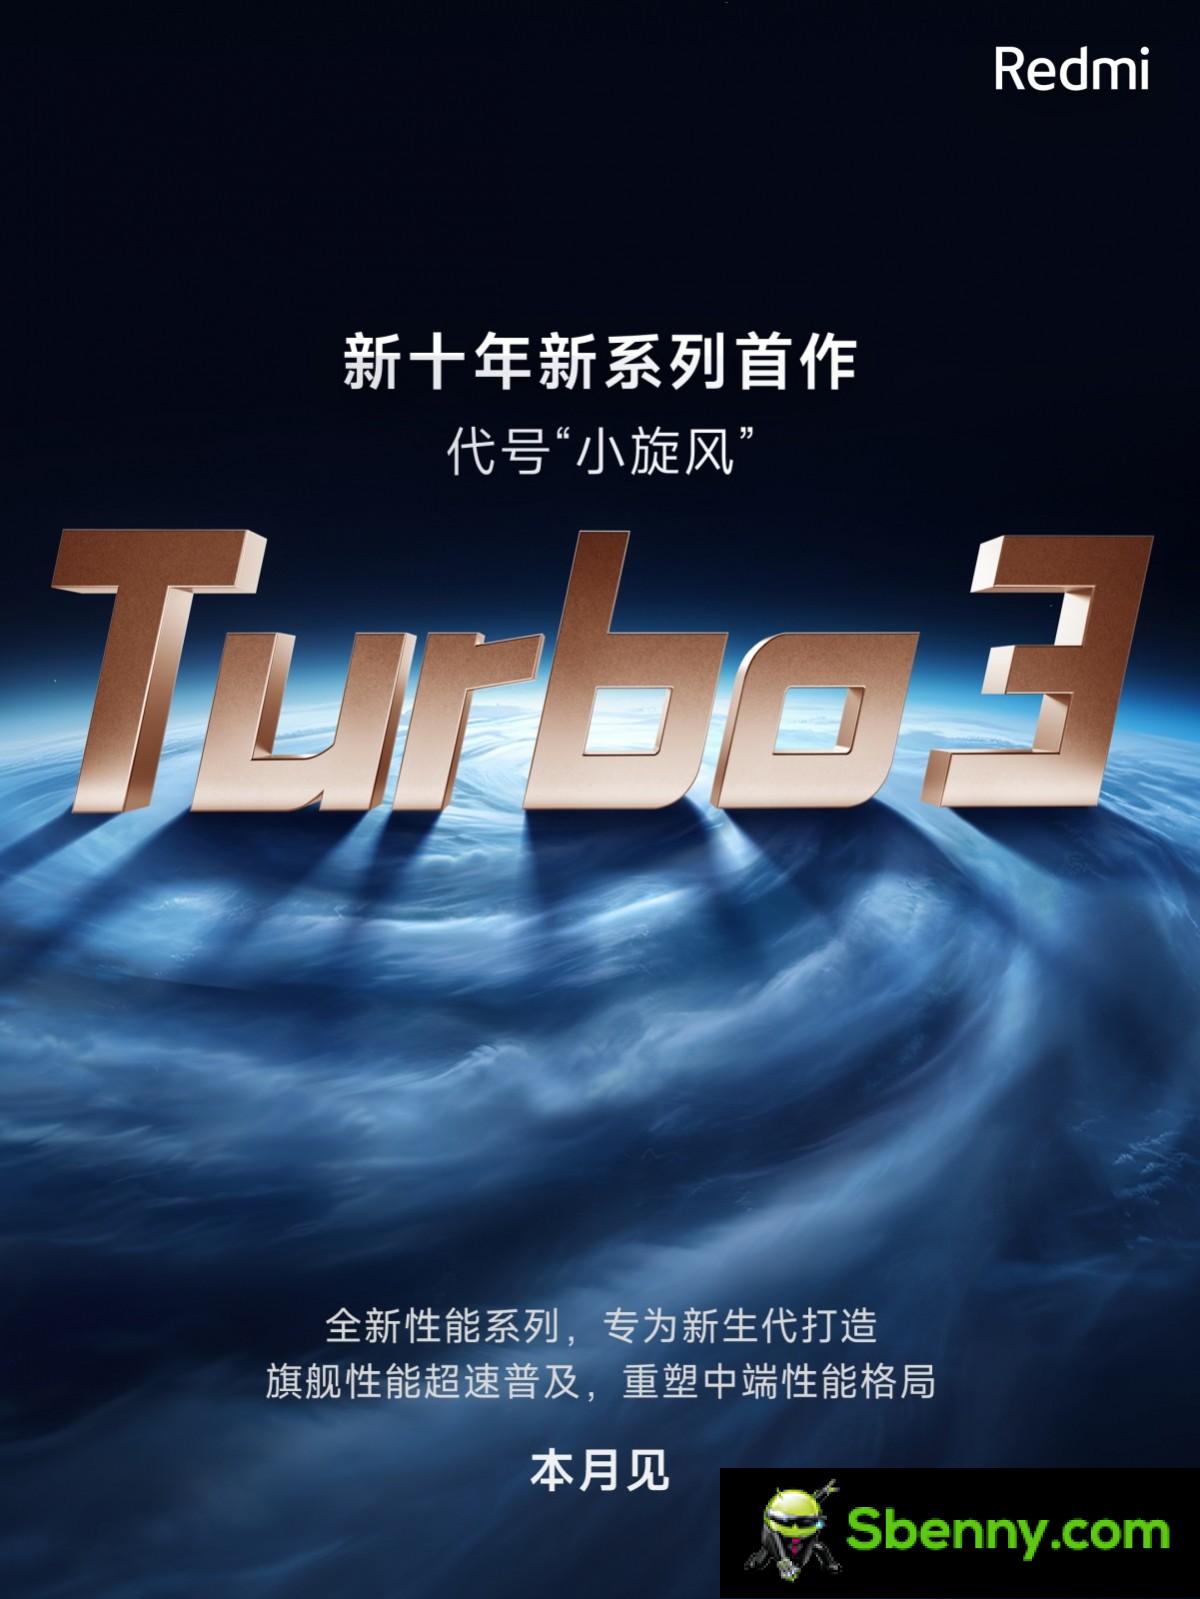 Redmi annonce Turbo 3 dans le cadre de la nouvelle génération de séries phares hautes performances